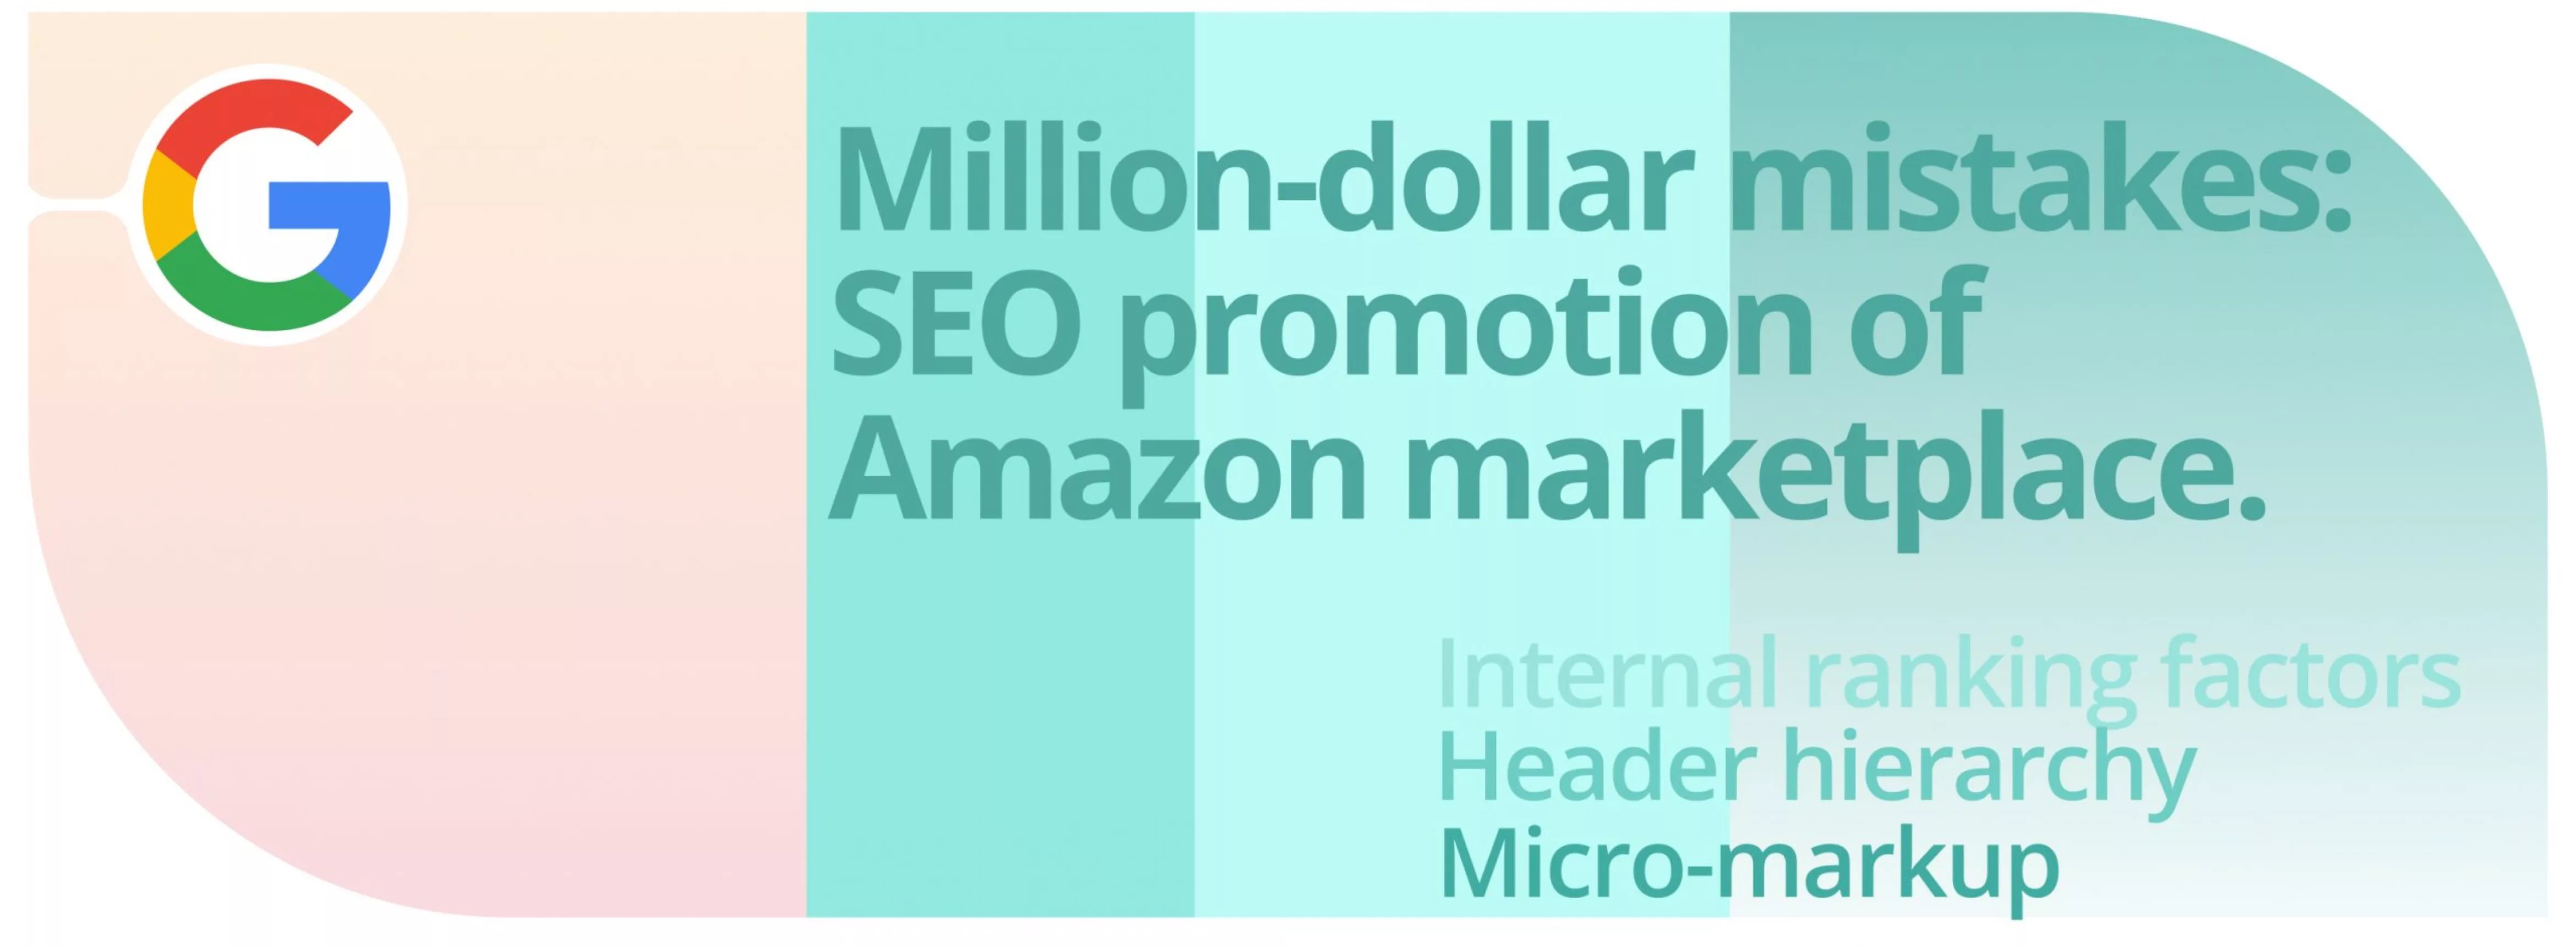 Million-dollar mistakes: SEO promotion of Amazon marketplace.